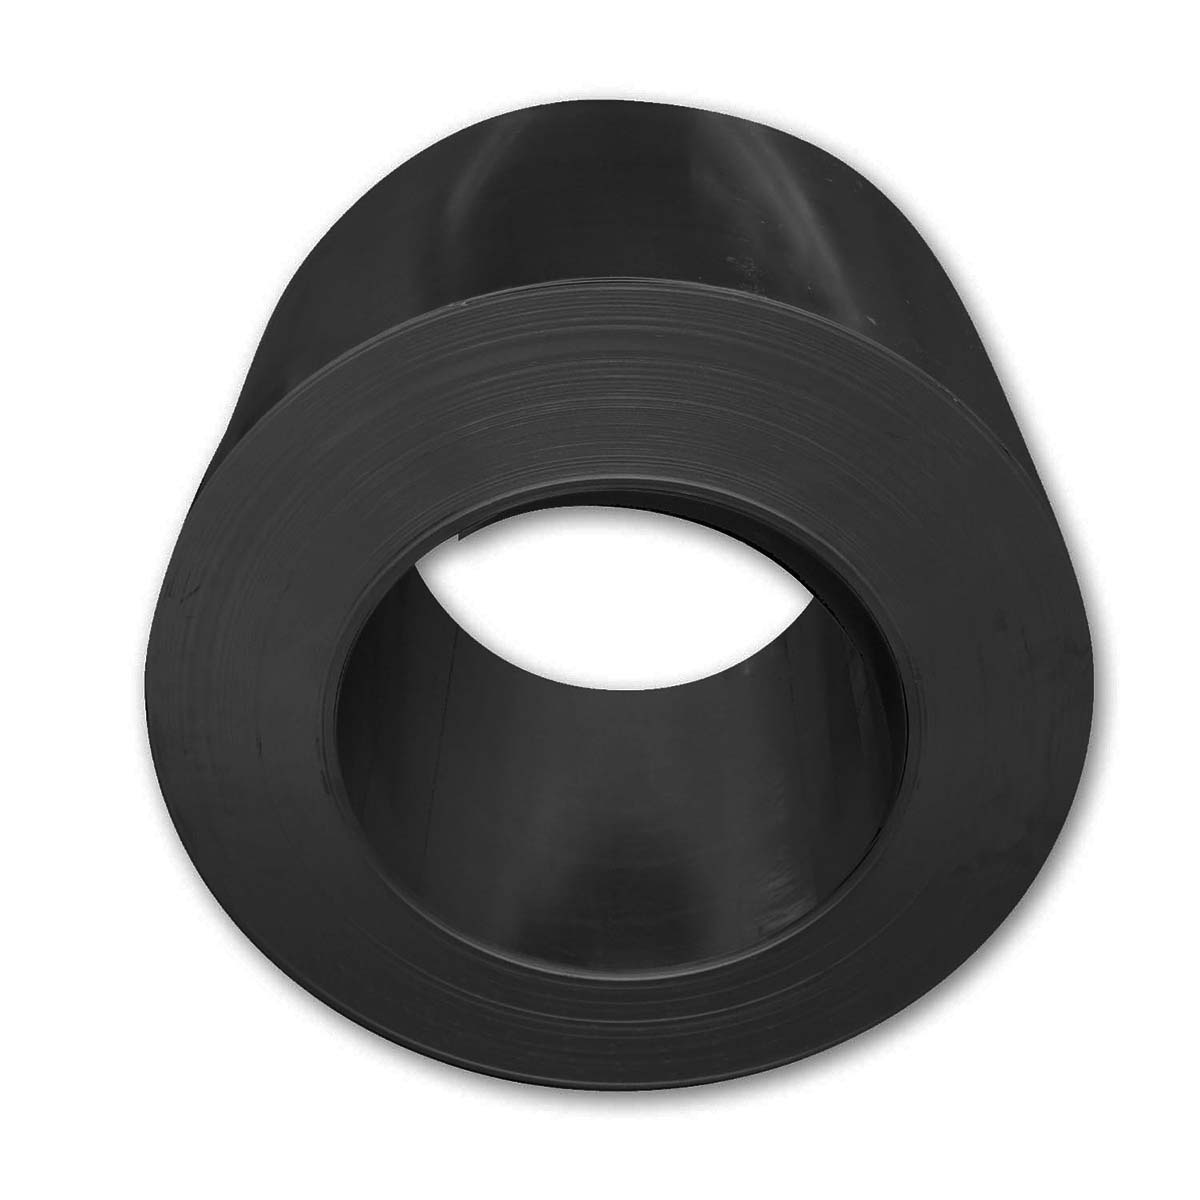 Zambelli Coil-verzinkt, Farbe Schwarz 0,6 x 1000 mm x 30 lfm, DX 53 mit Folie